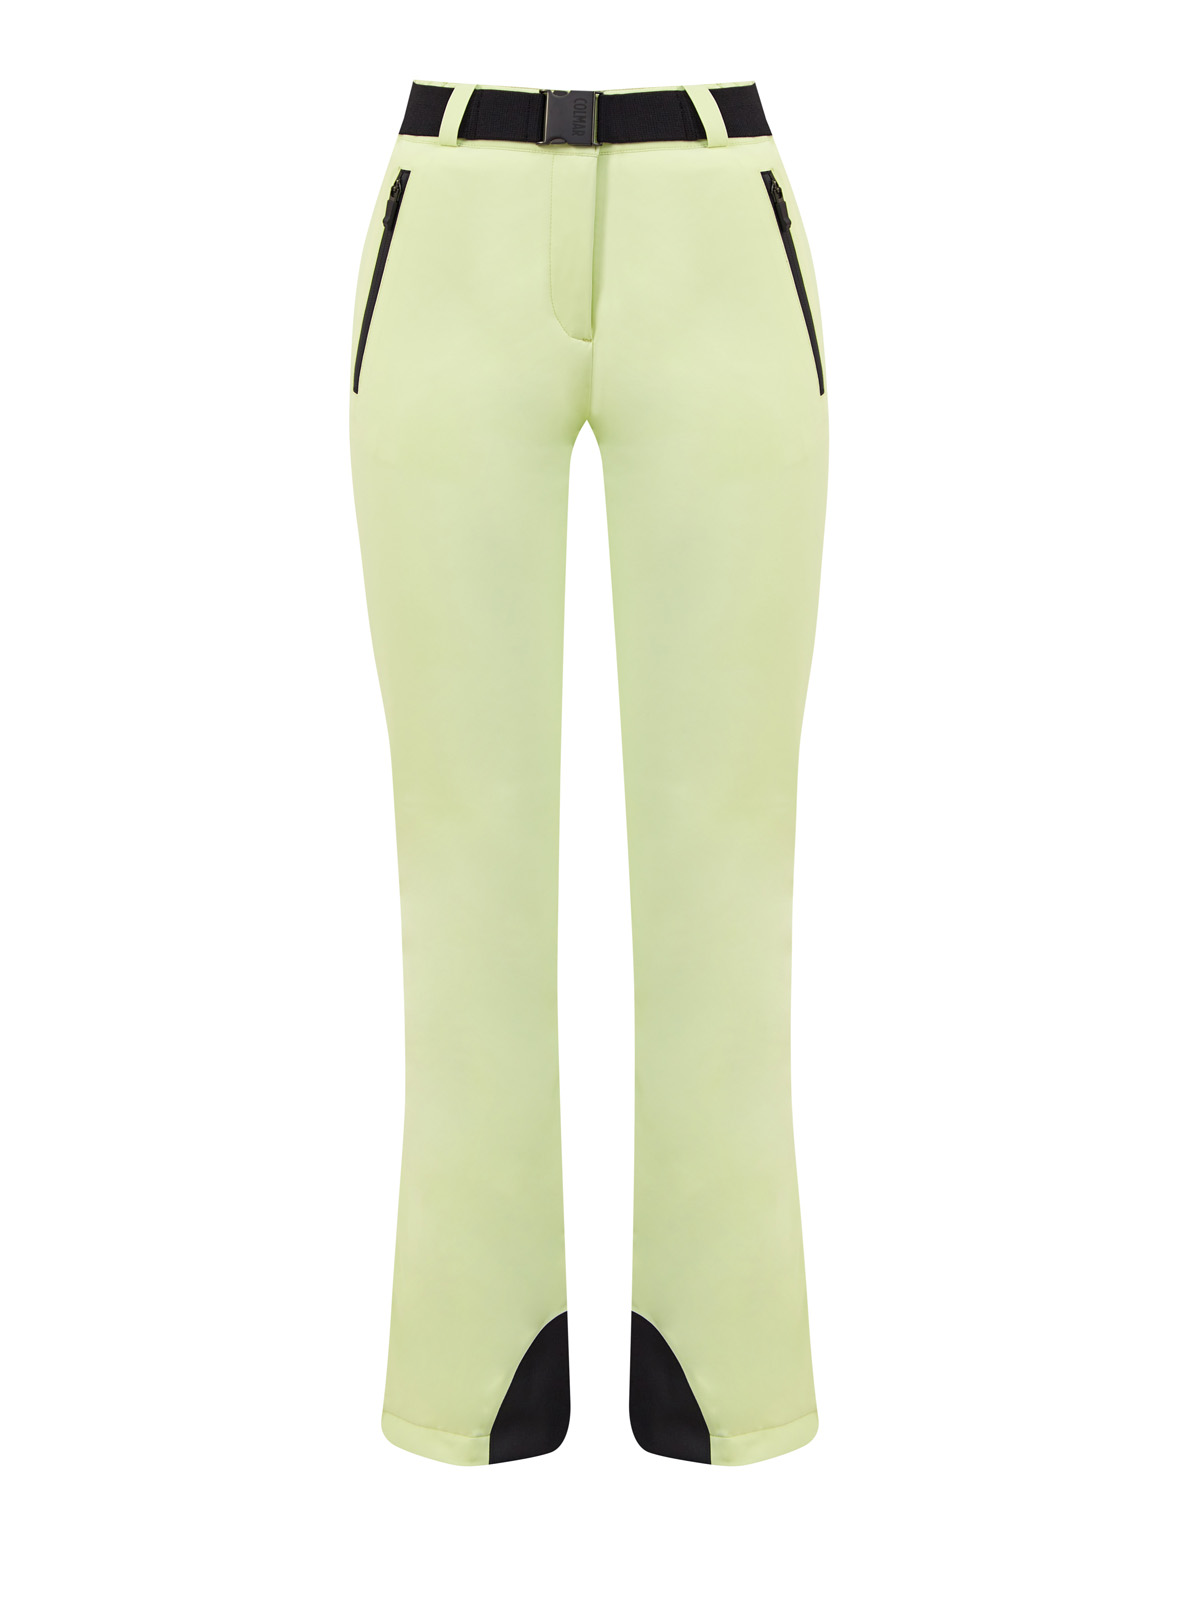 Горнолыжные брюки с утеплителем Clomax® Flex4way и поясом COLMAR, цвет зеленый, размер S;M;L;XL - фото 1